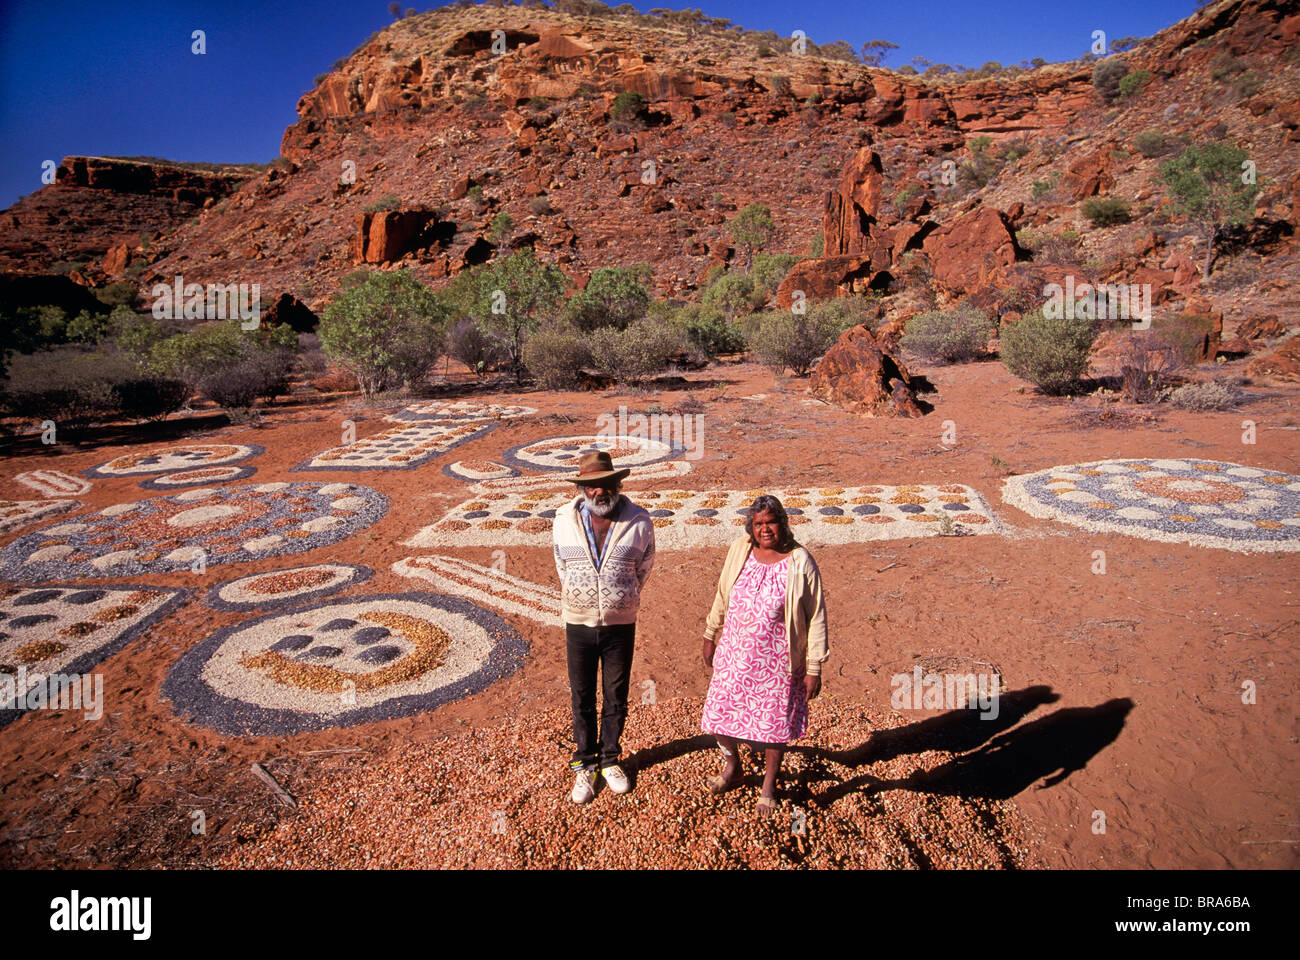 Gli anziani delle tribù e la pittura con la sabbia, Ipolera comunità aborigena, Australia centrale Foto Stock